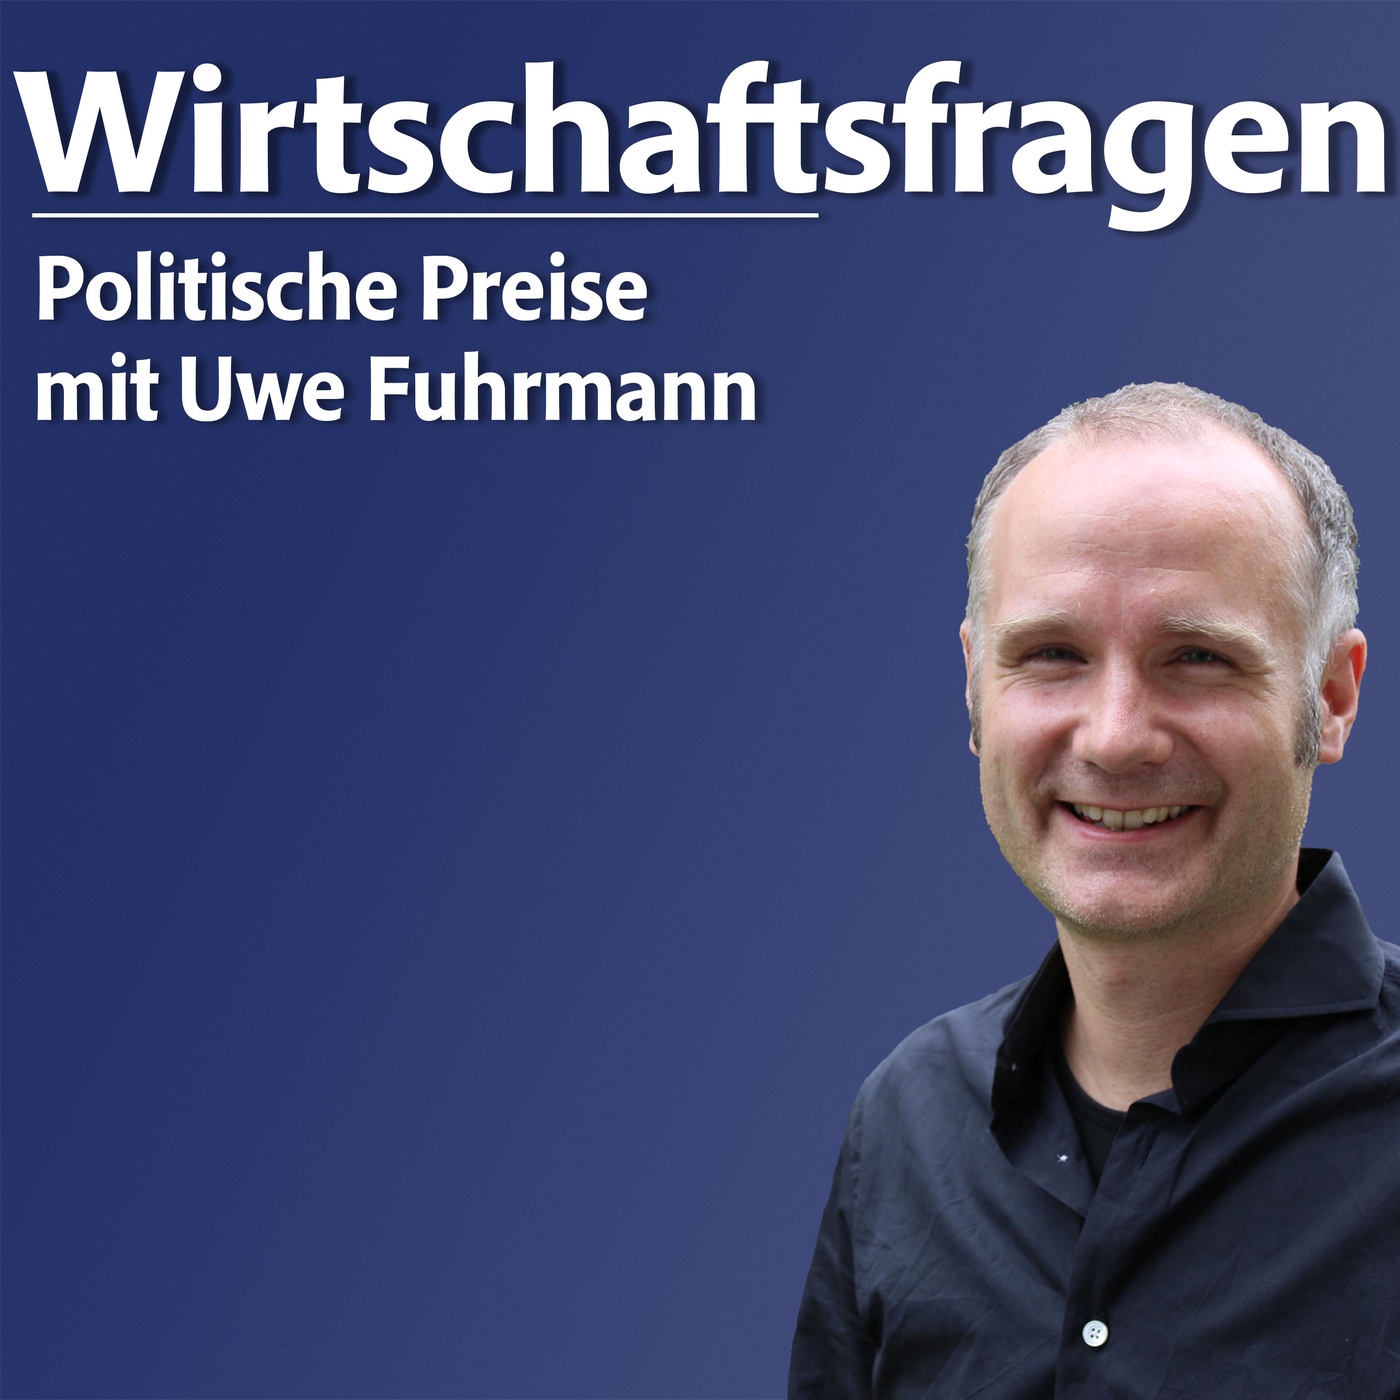 Politische Preise - mit Dr. Uwe Fuhrmann